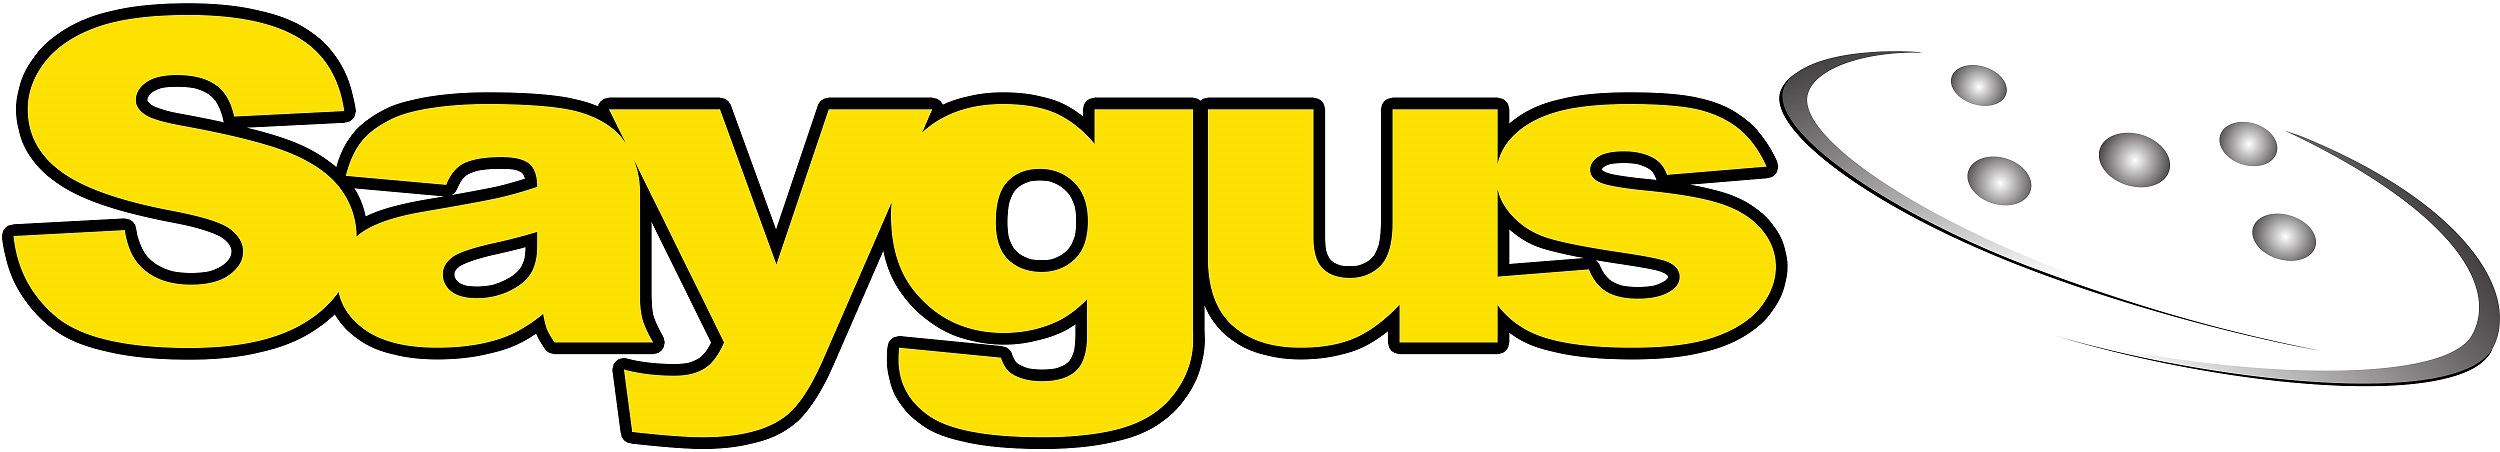 Saygus-logo-testimonial